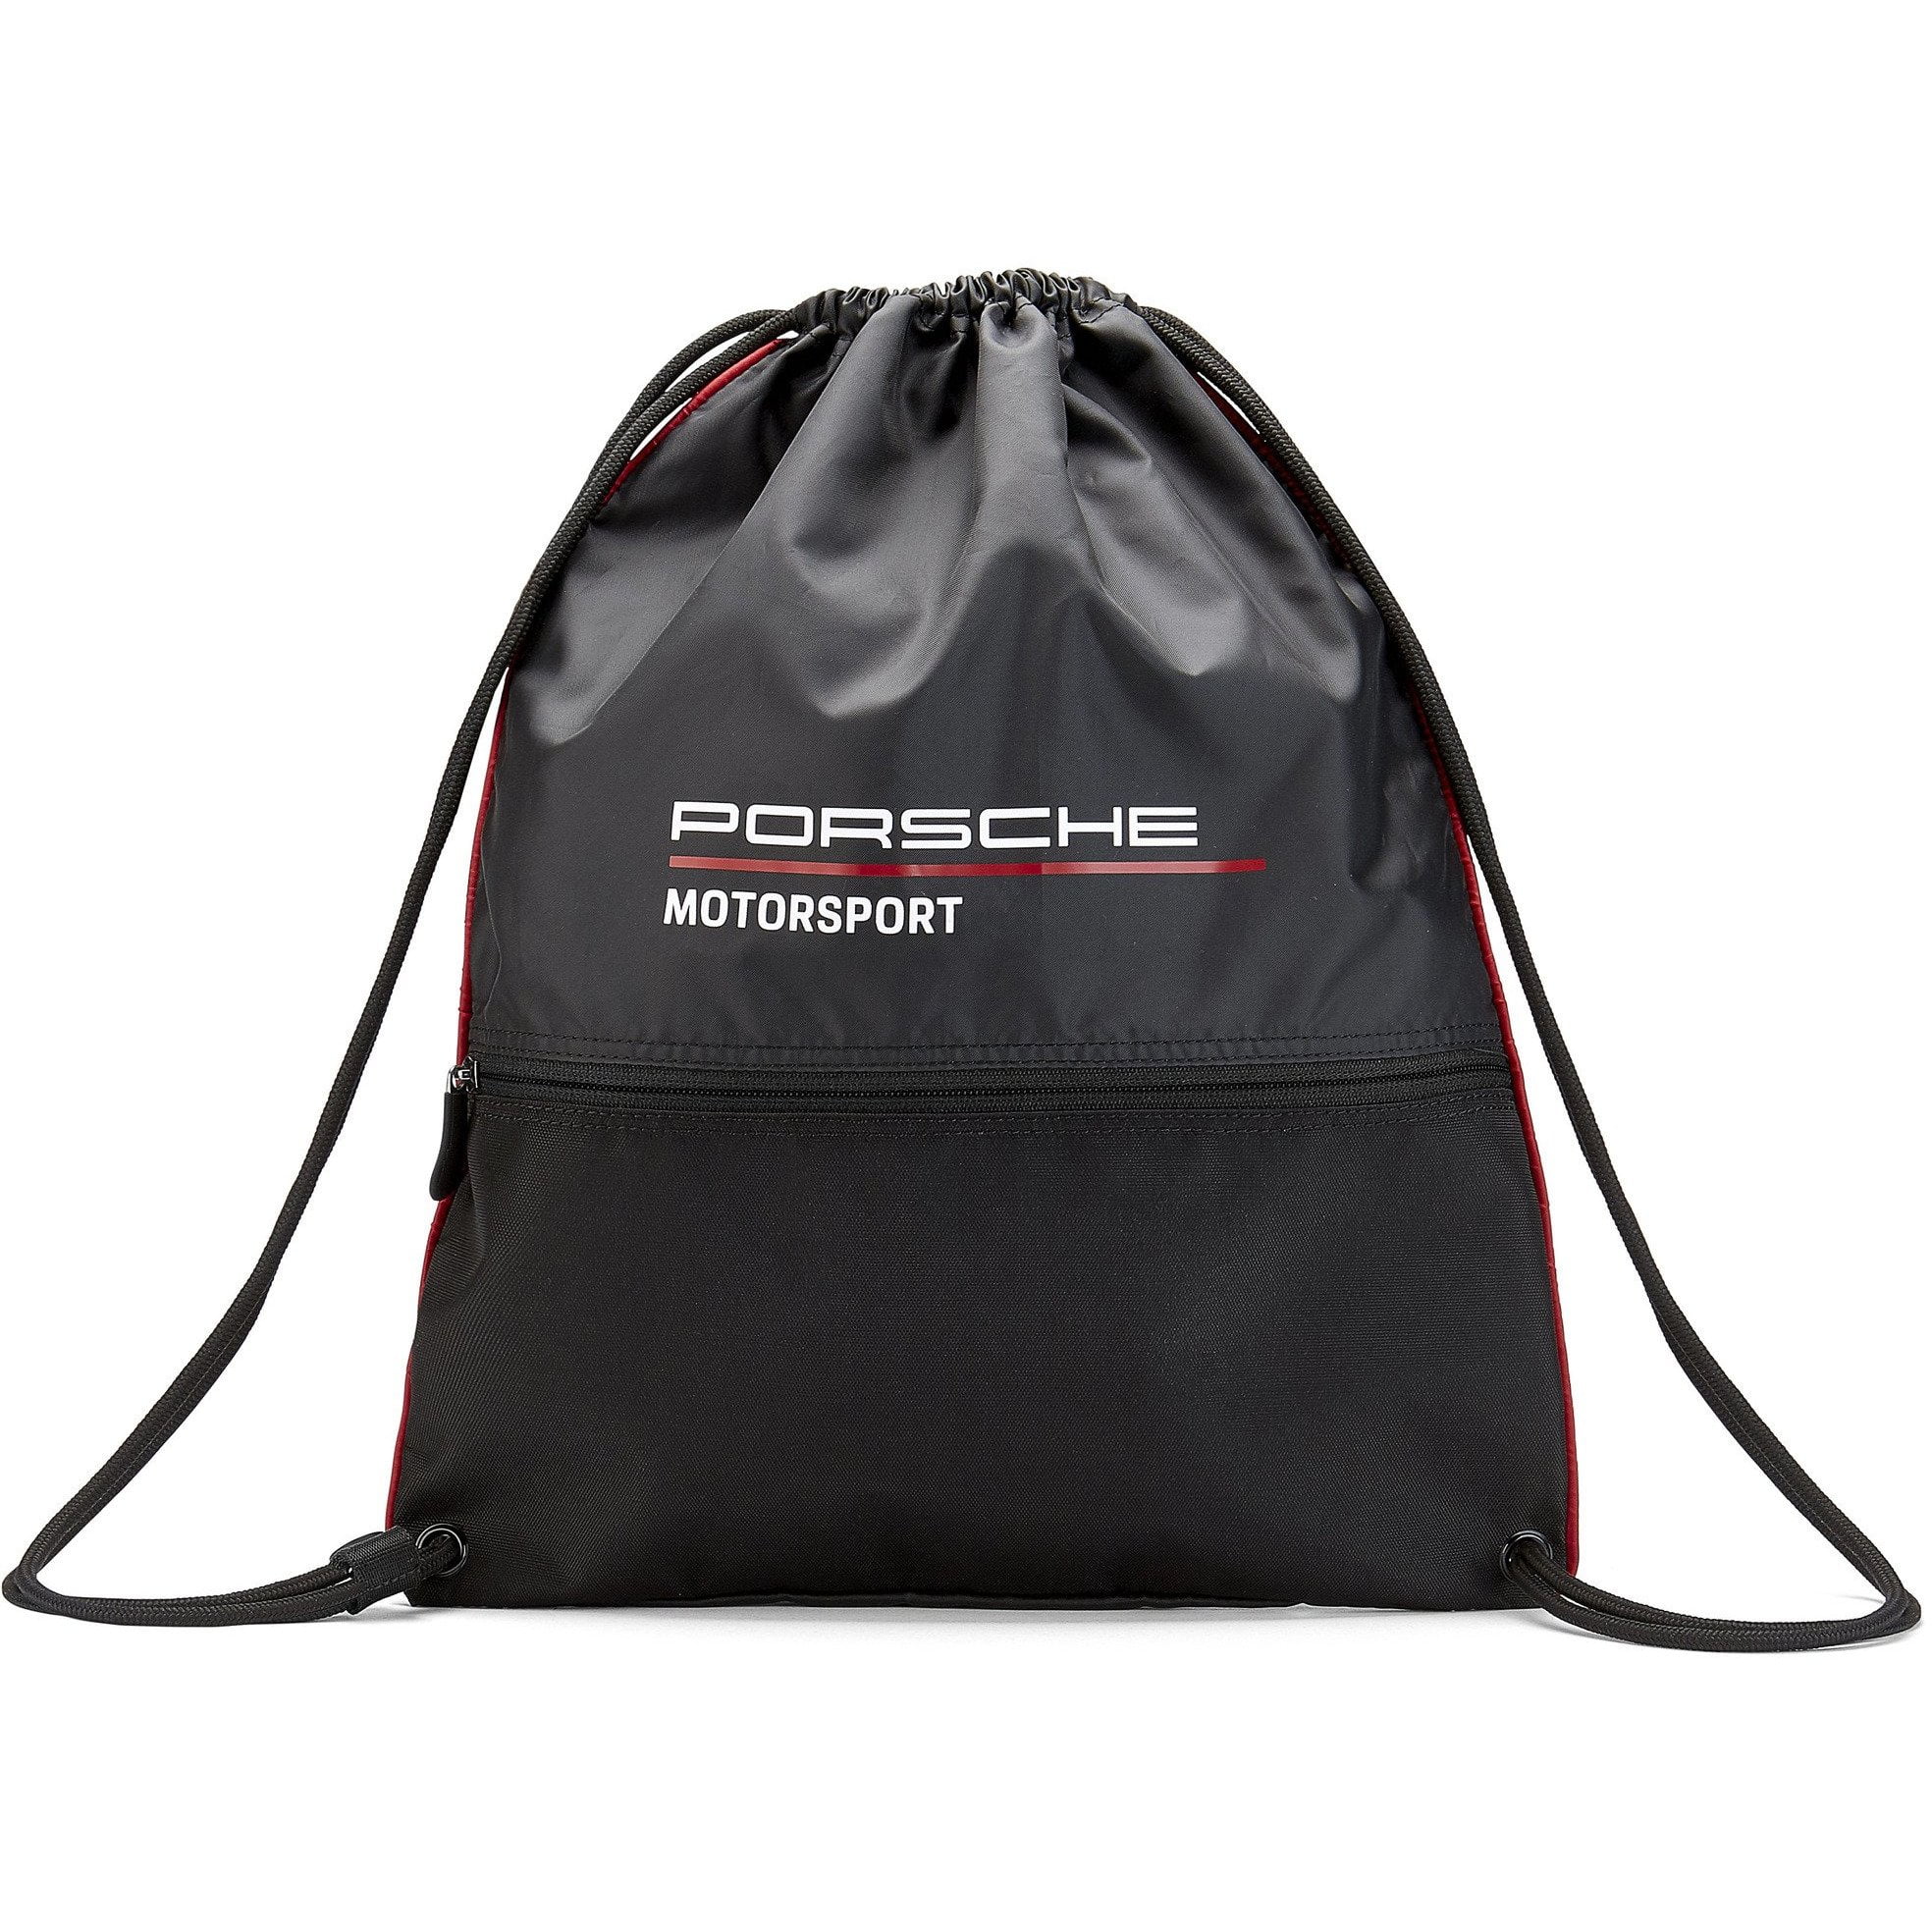 Porsche Motorsport Pull Bag - Walmart.com - Walmart.com